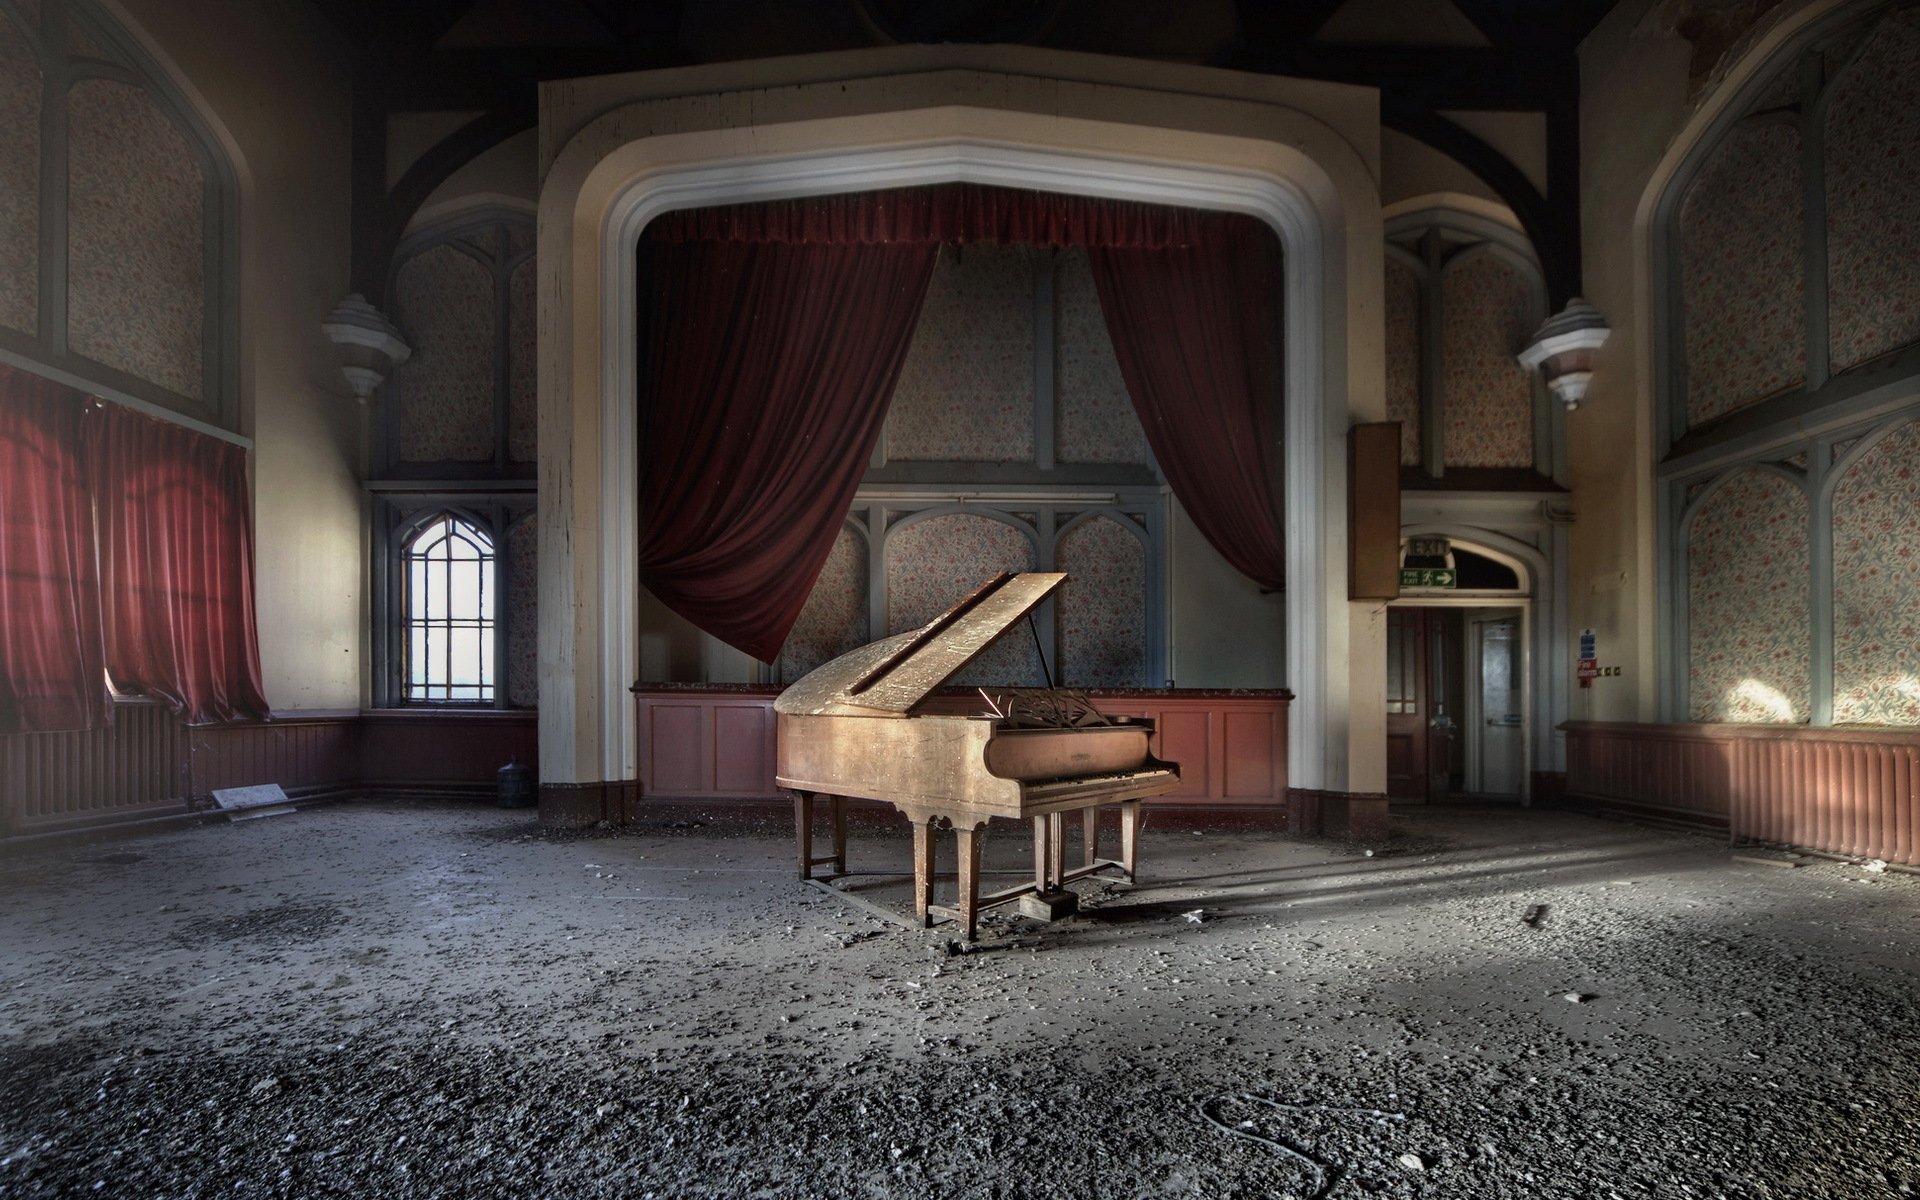 Фоновая театральная музыка. Заброшенный театр. Зал с роялем. Комната с пианино арт. Сцена в замке.